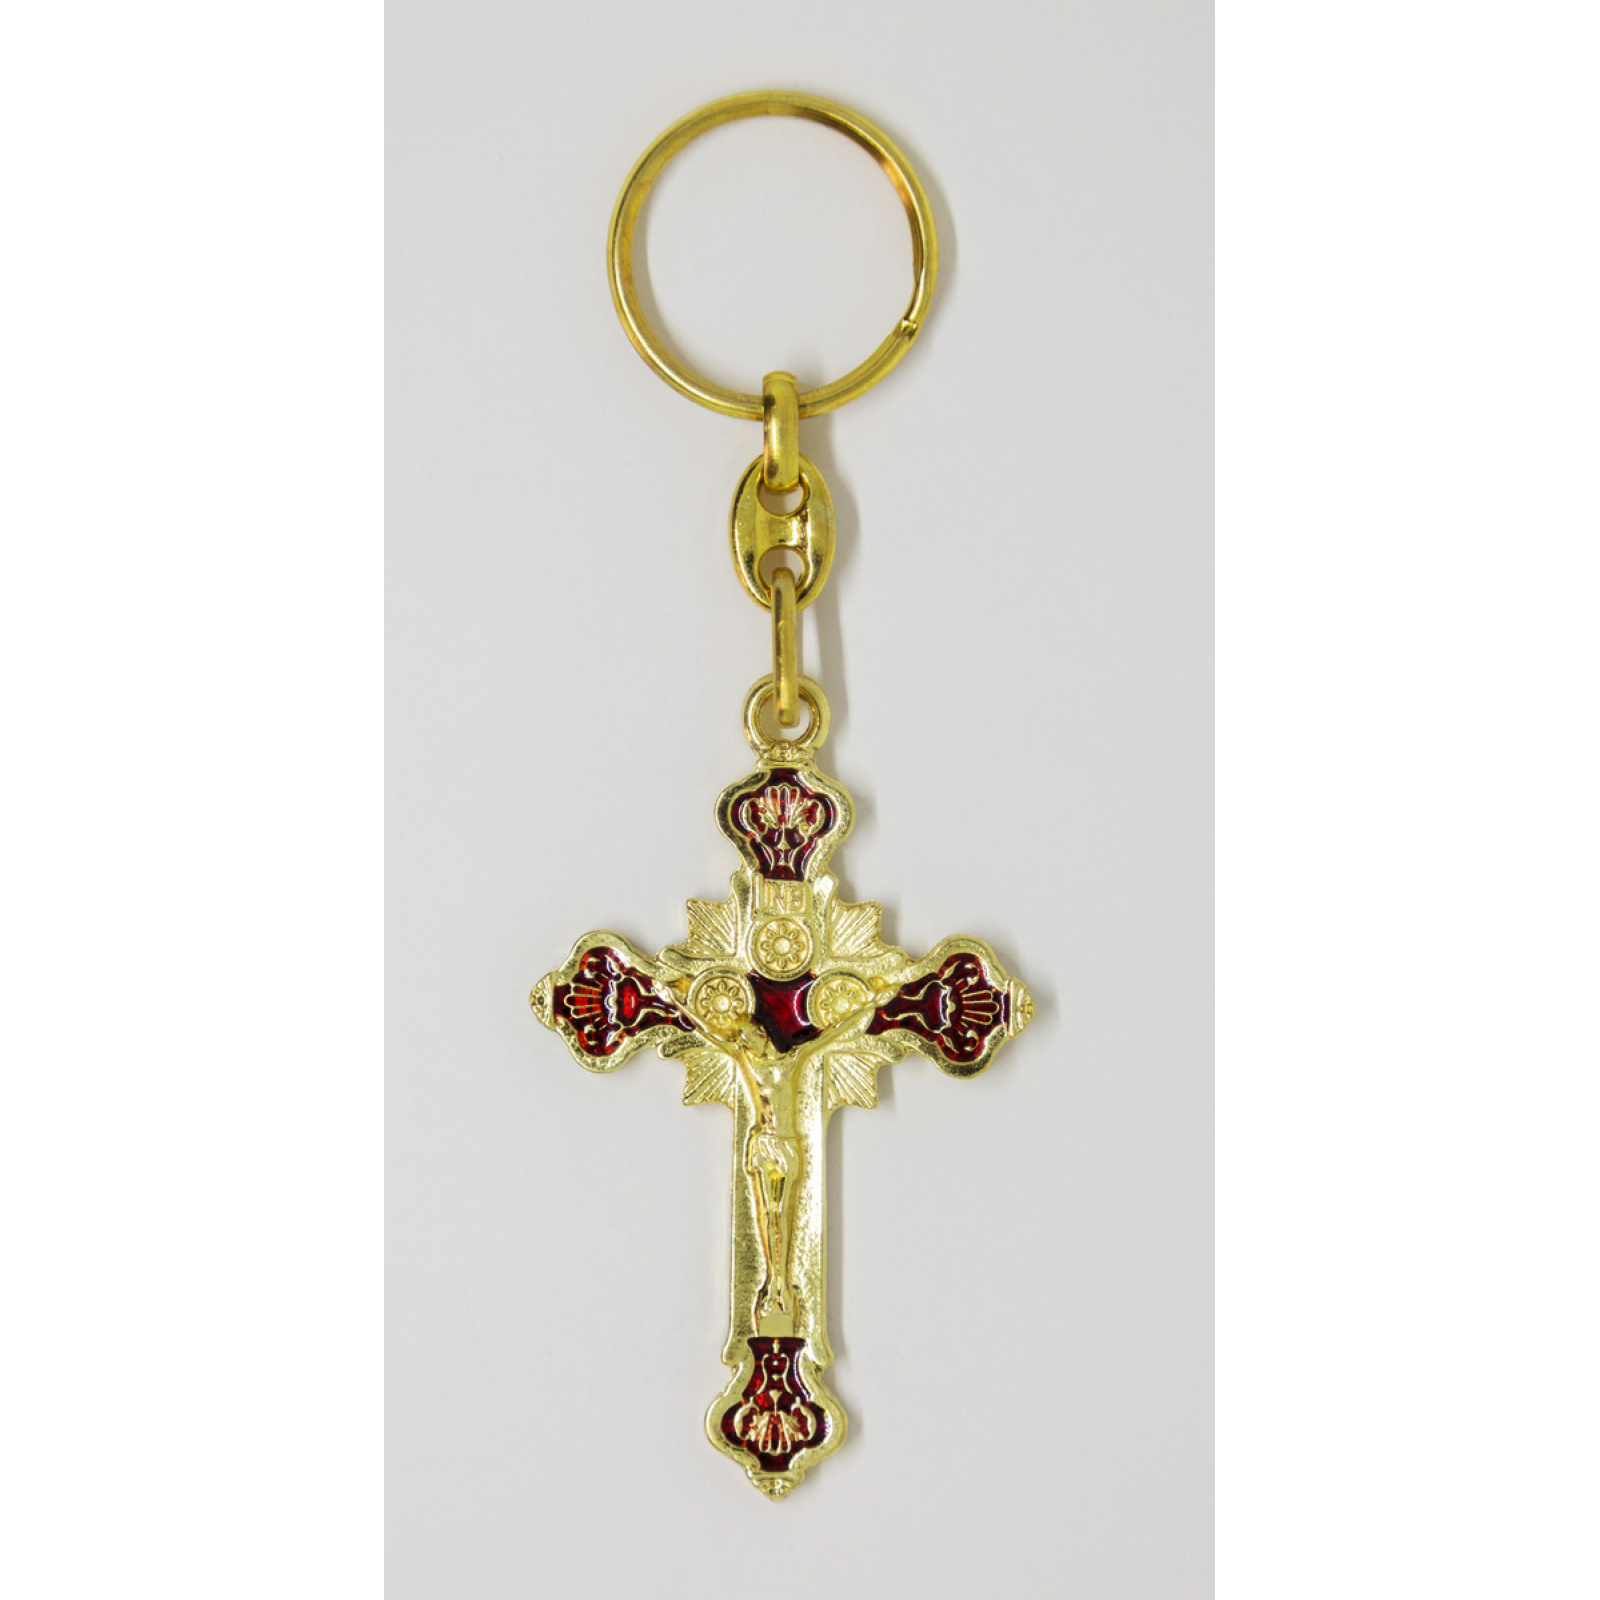 Enamel crucifix keychain